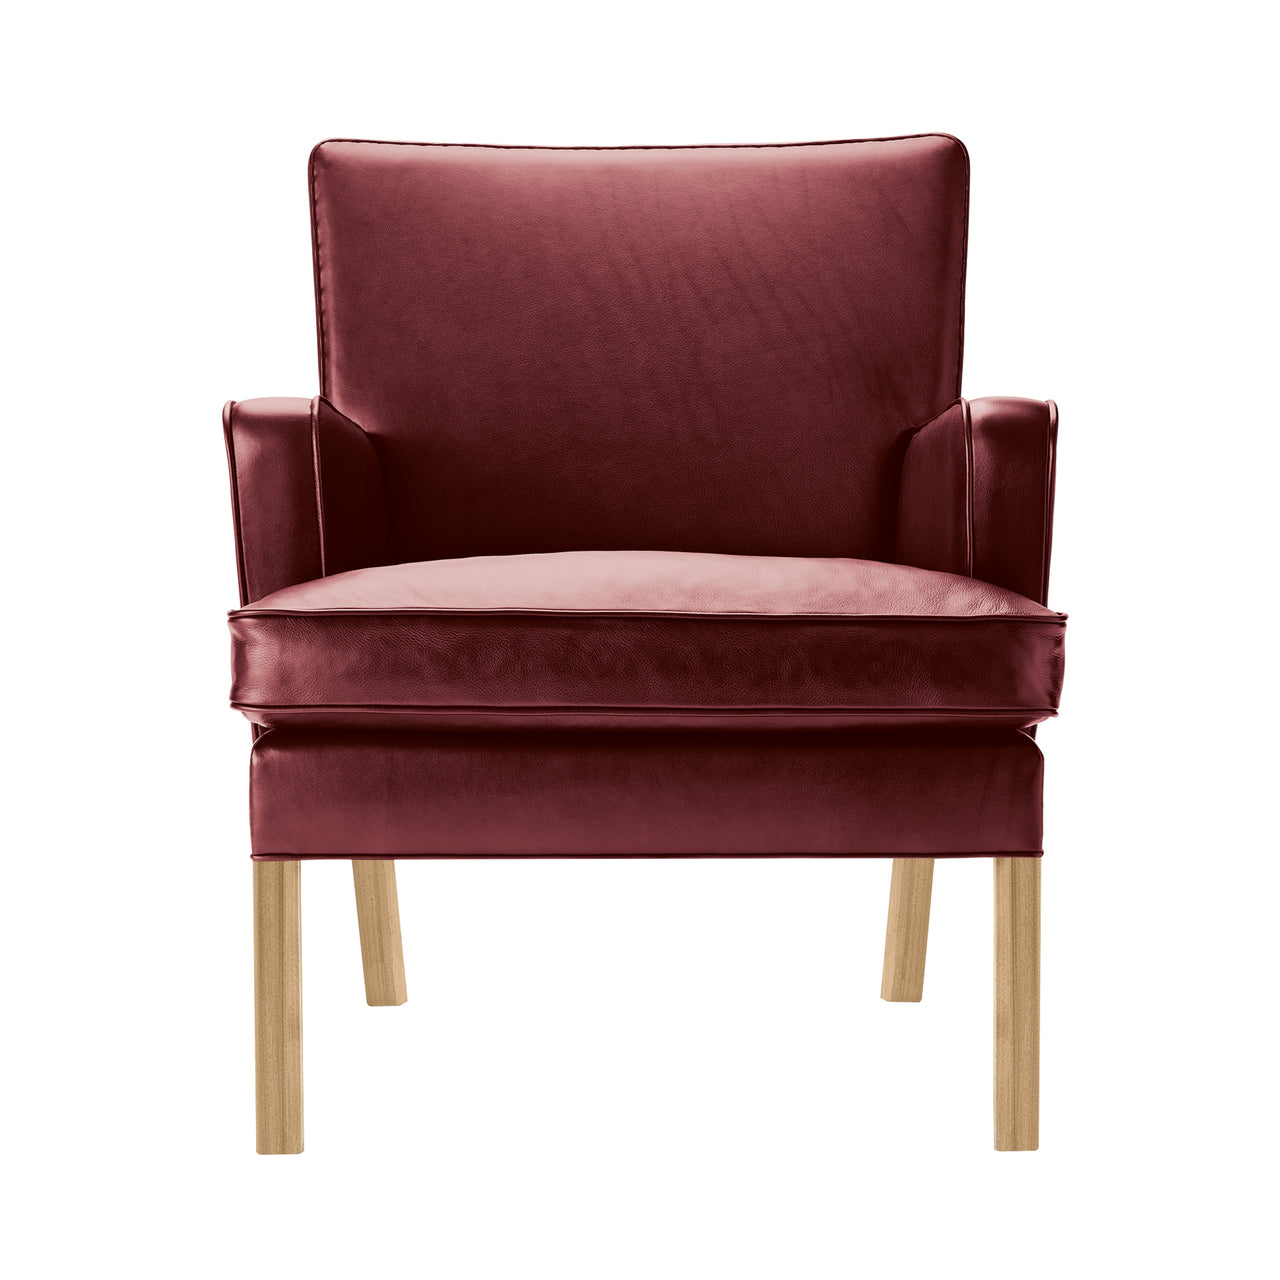 KK53130 Easy Chair: Oiled Oak